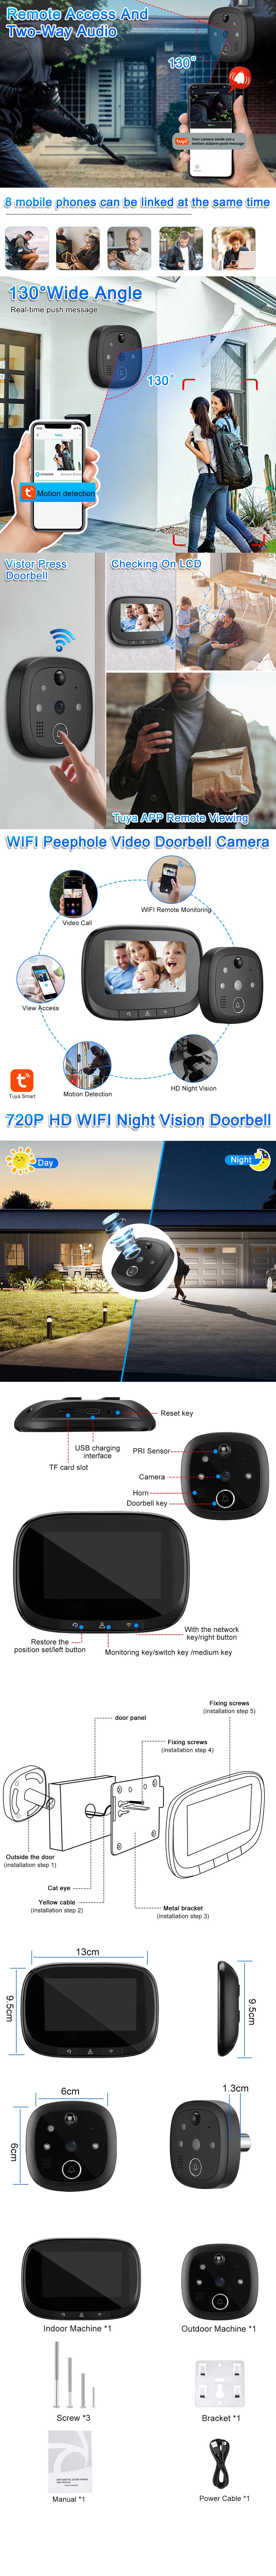 W2 Tuya Smart WiFi Door Viewer Wireless Video Doorbell with Remote Intercom APP Control Night Vision Smart Home Video Cat Eye Door Bell